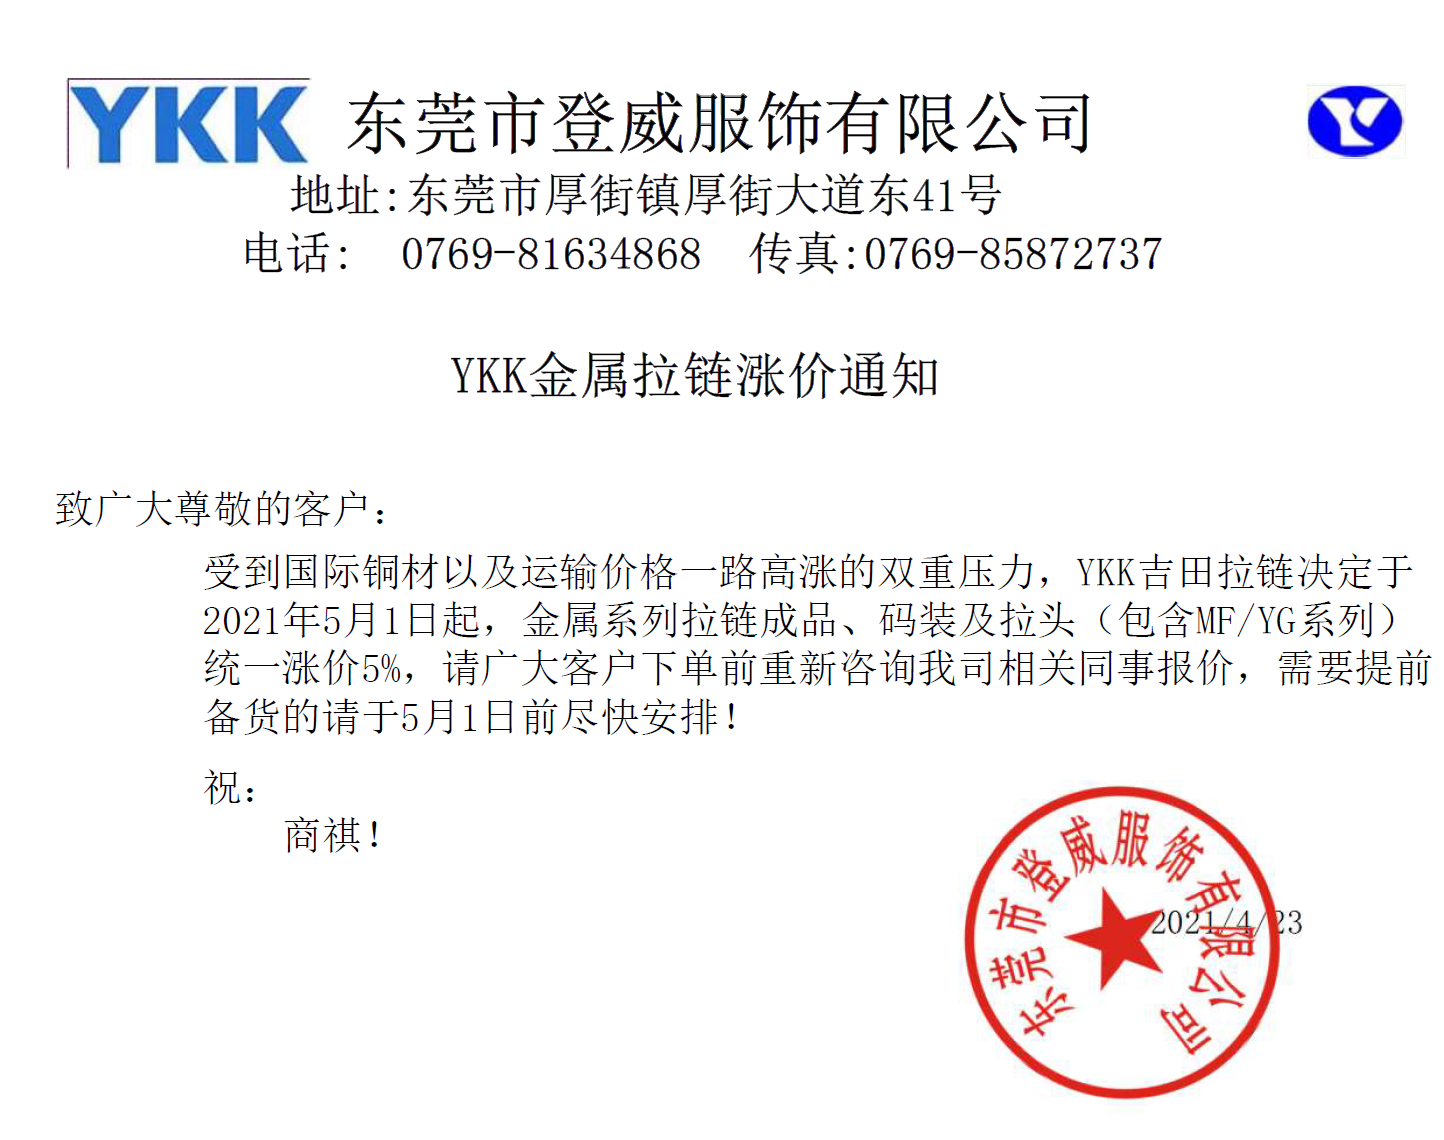 YKK金属系列拉链2021年涨价通知